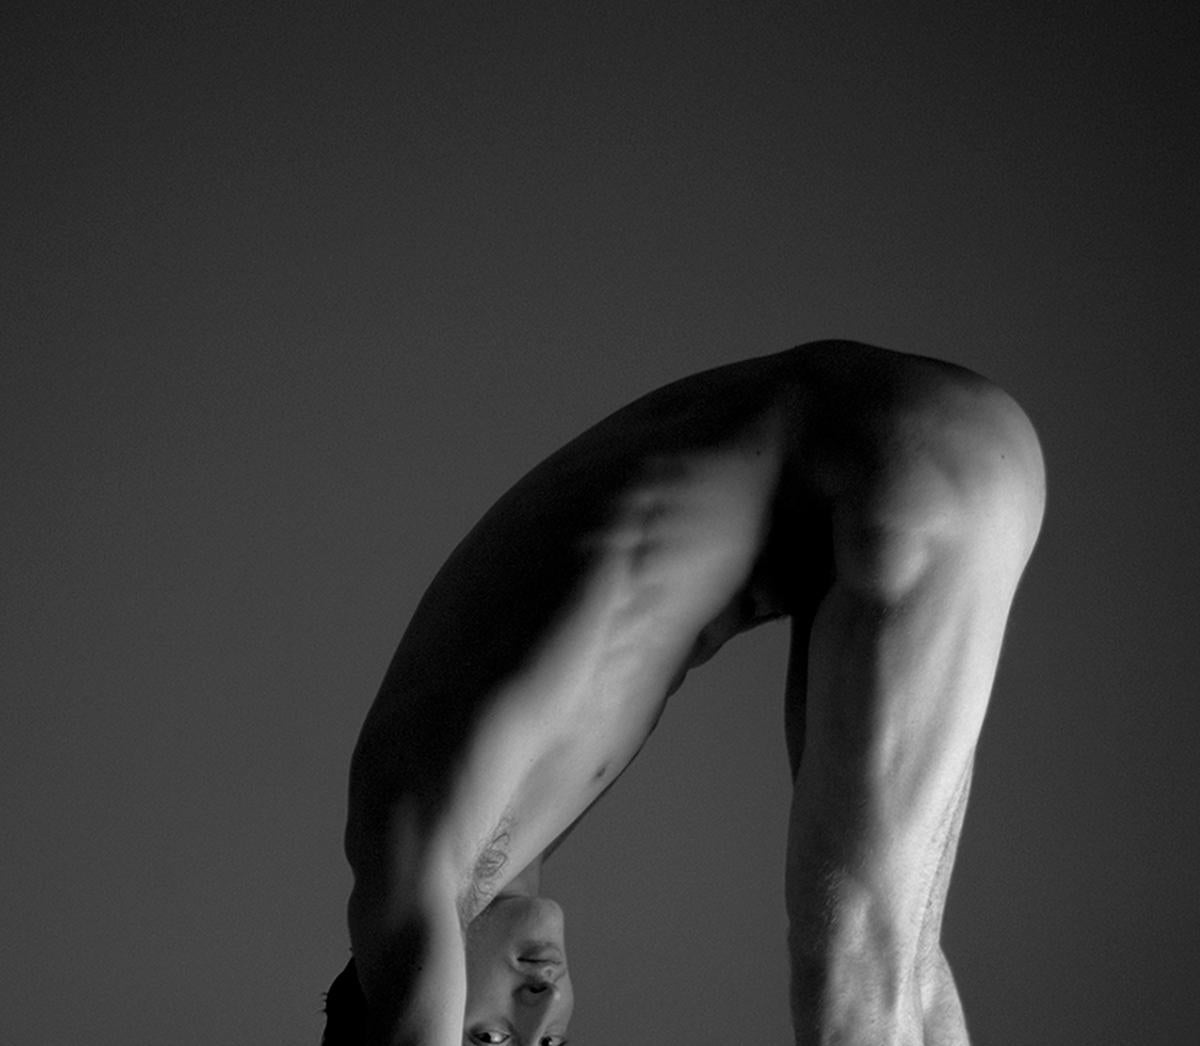 Bailarin I. Der Bailarín, Serie. Männlicher Nackttänzer. Schwarz-Weiß-Fotografie (Moderne), Photograph, von Ricky Cohete